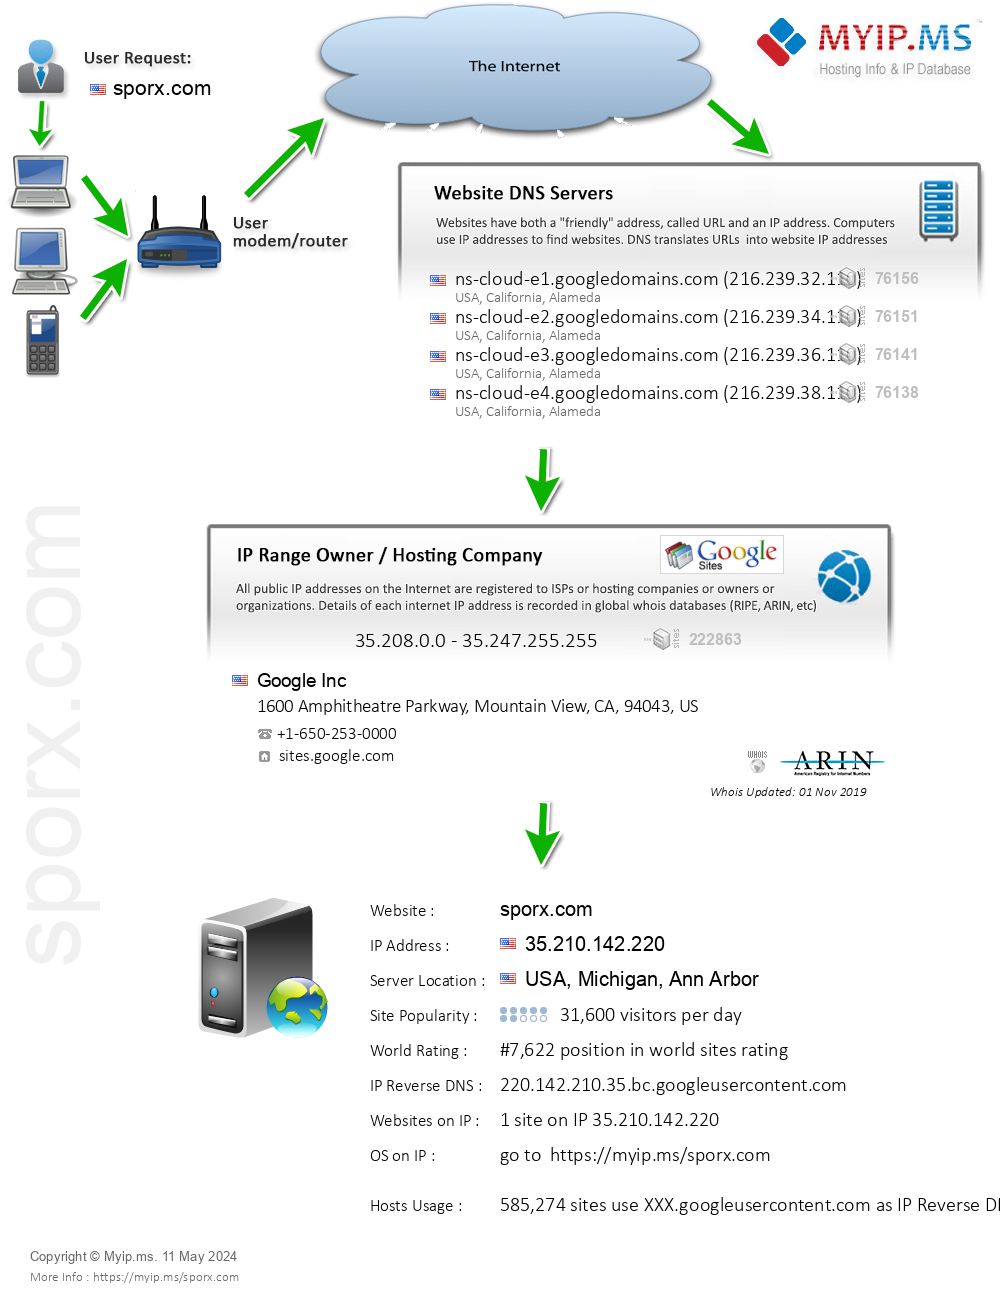 Sporx.com - Website Hosting Visual IP Diagram